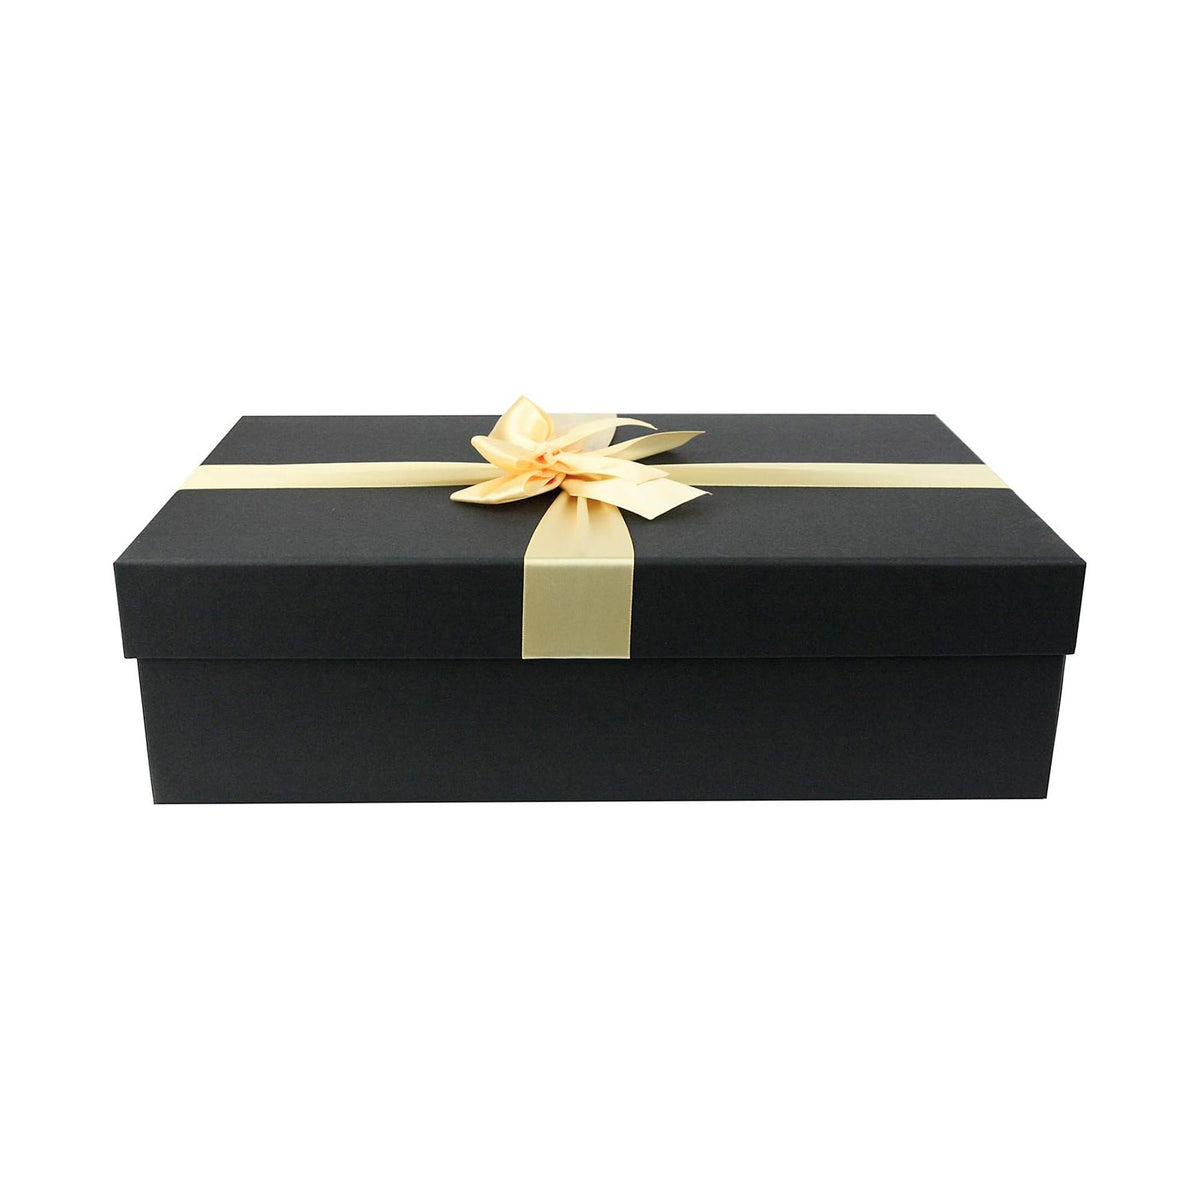 Luxury Black Gift Box - Single (Sizes Available)